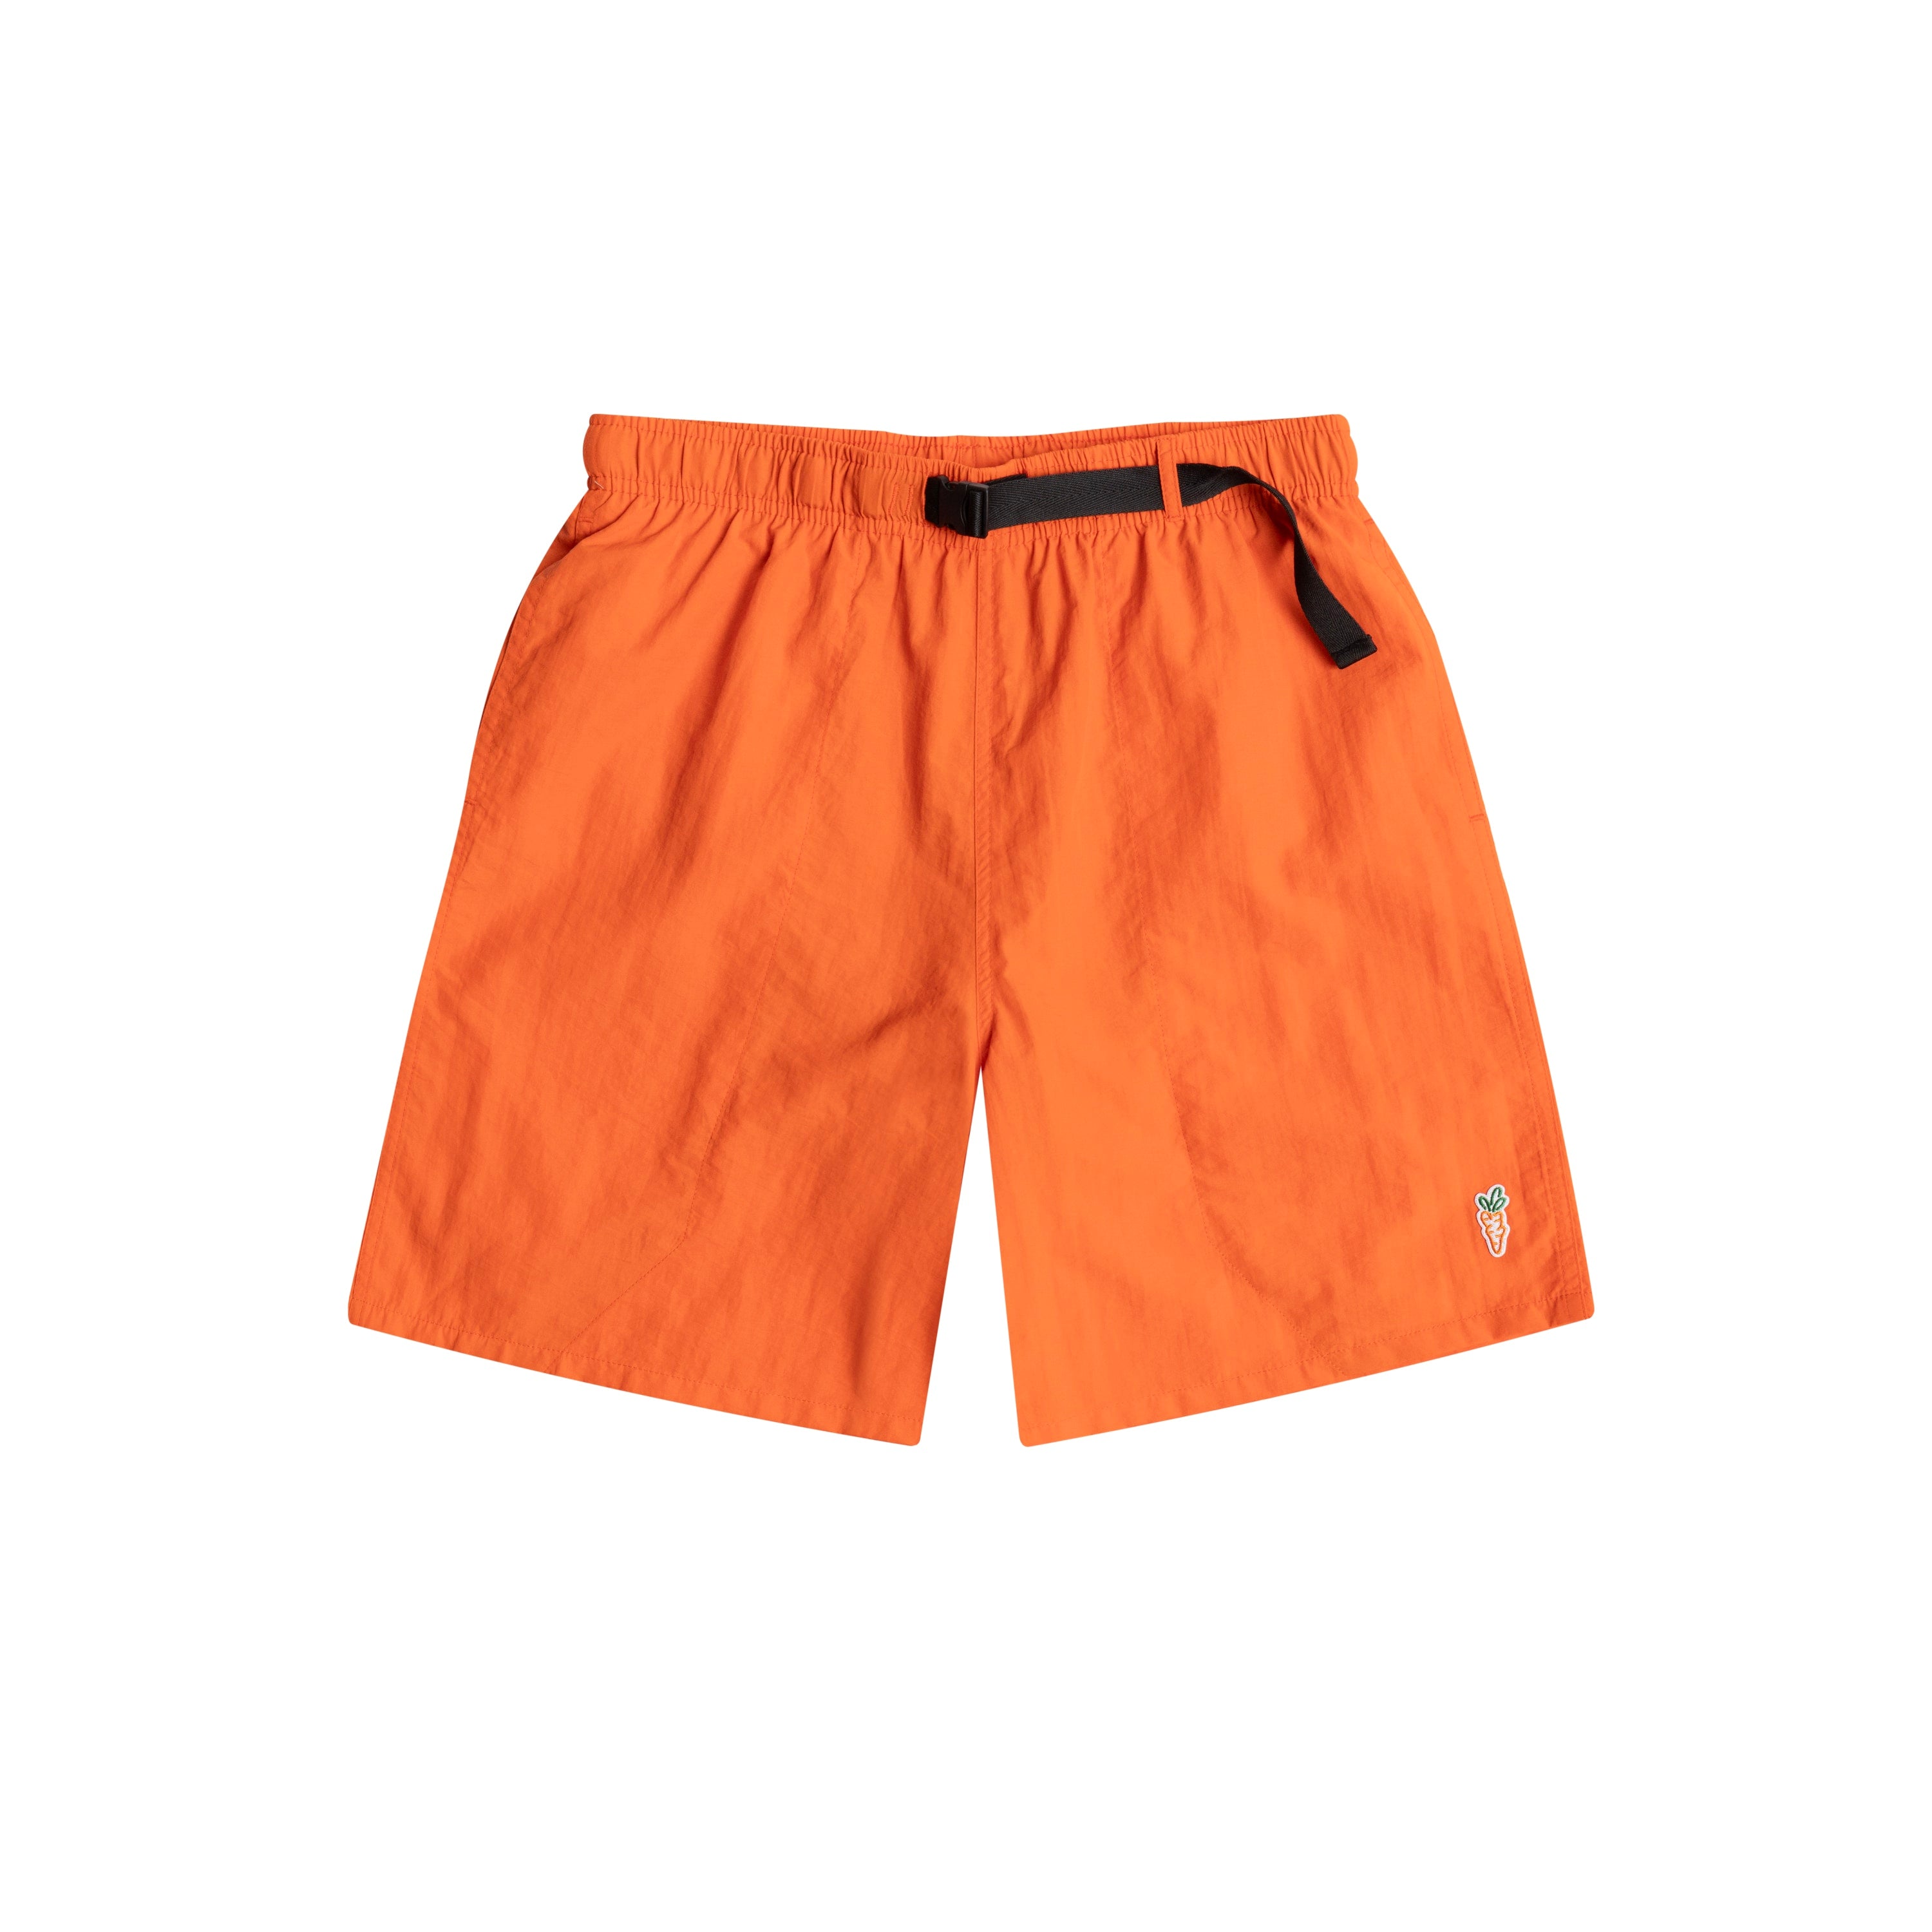 Bonpoint Nath belted shorts - Orange